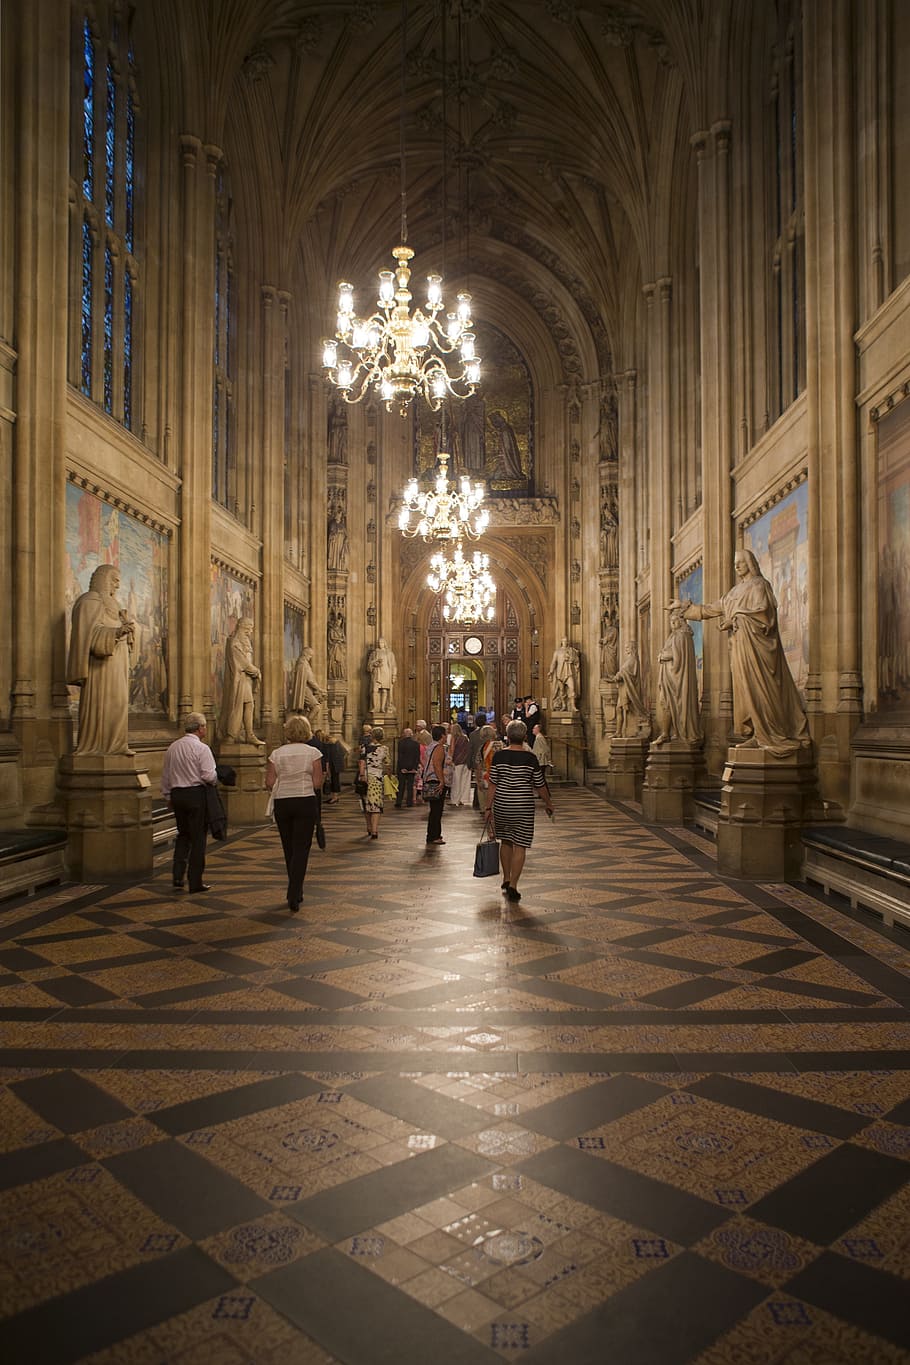 Palacio de Westminster, pasillos del poder, casas del parlamento británico, galería larga, suelo de baldosas victorianas, candelabros, pinturas murales, estatuas, arquitectura gótica, arquitectura